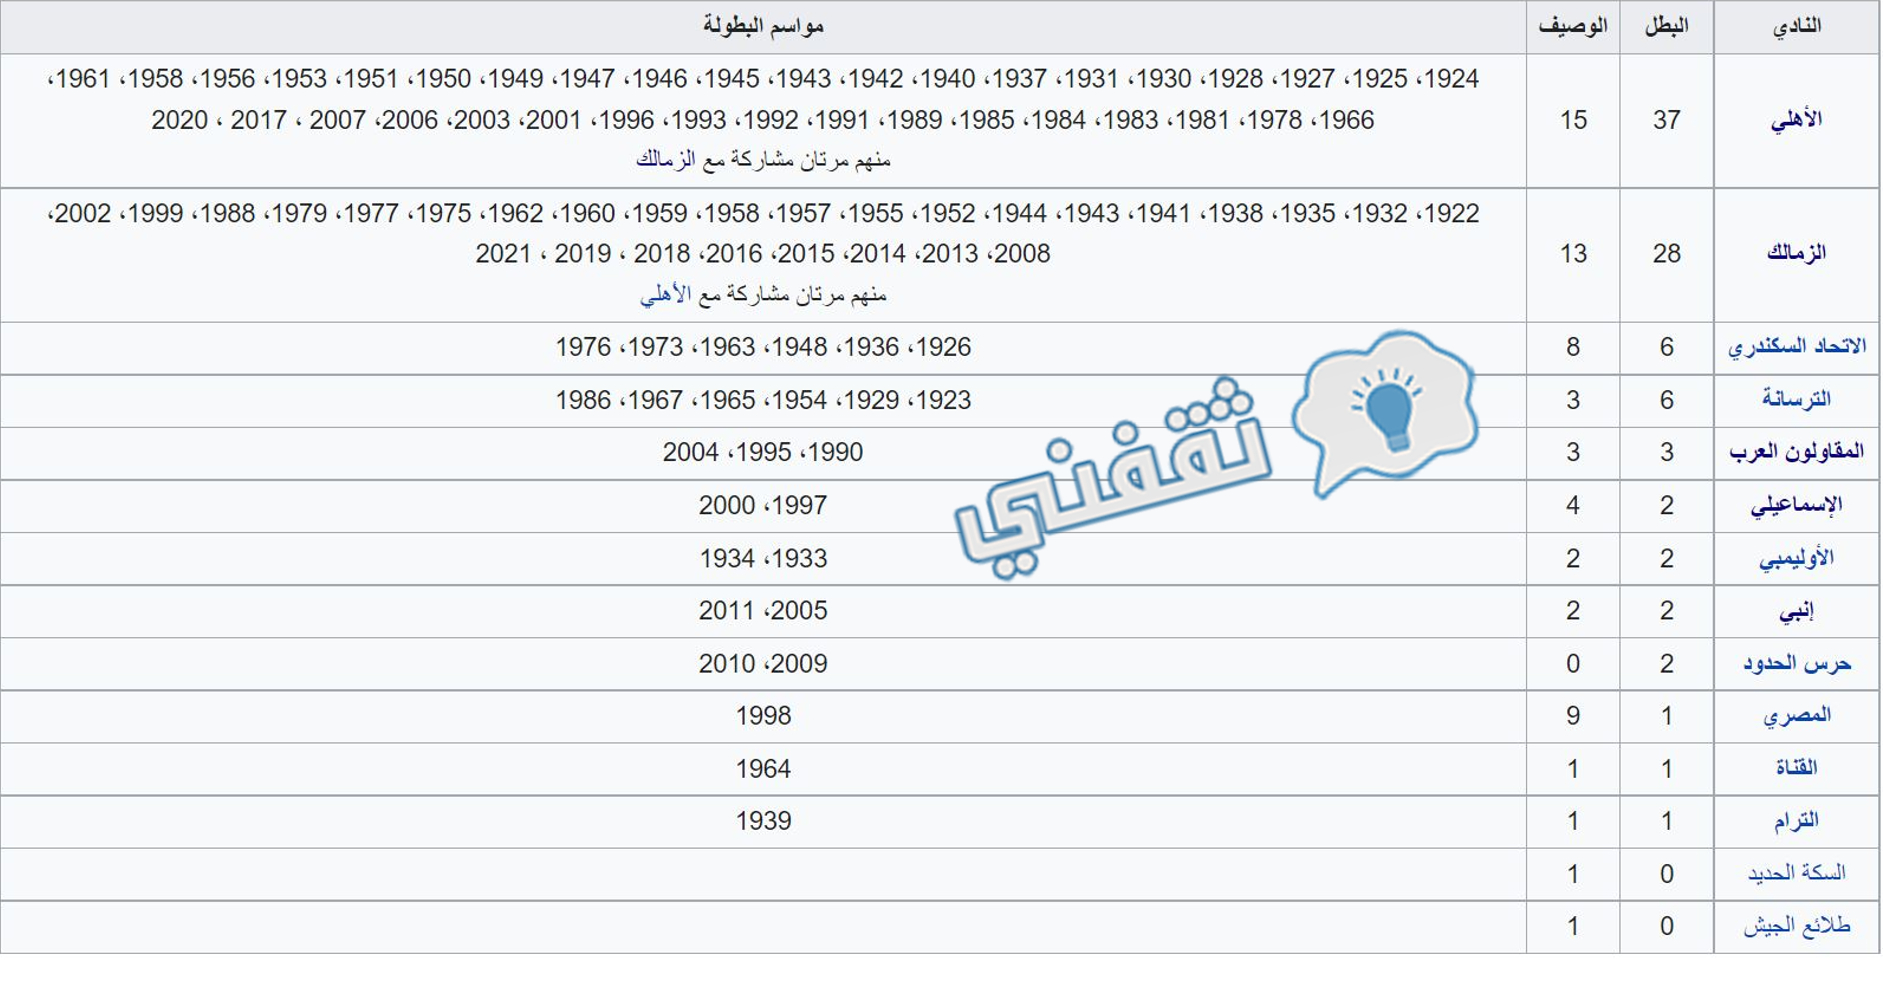 سجل أبطال كأس مصر قبل النسخة 90 (2022)